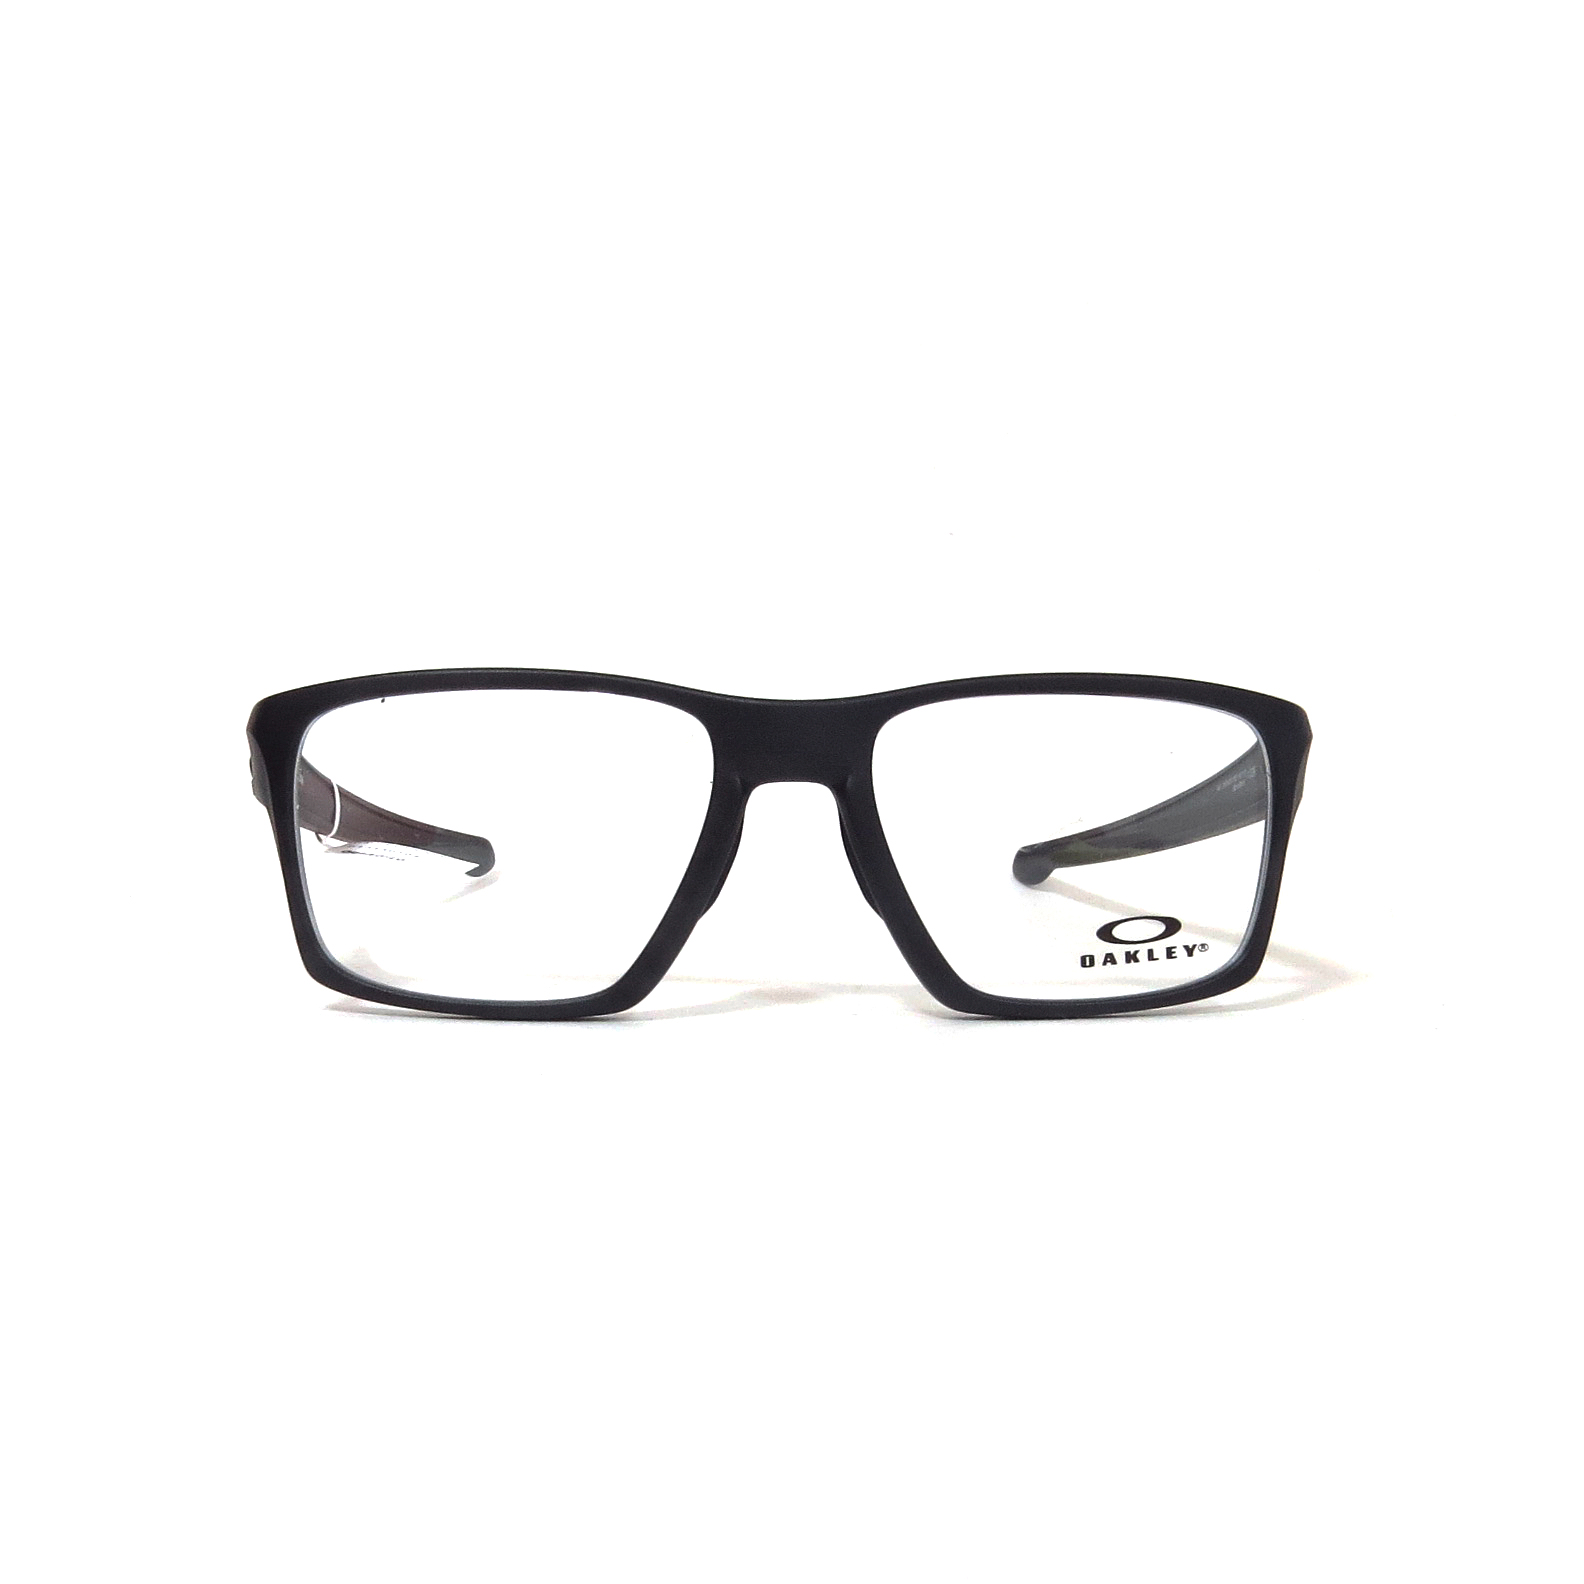 Óptica las gafas  OAKLEY - 8140 - Óptica las gafas